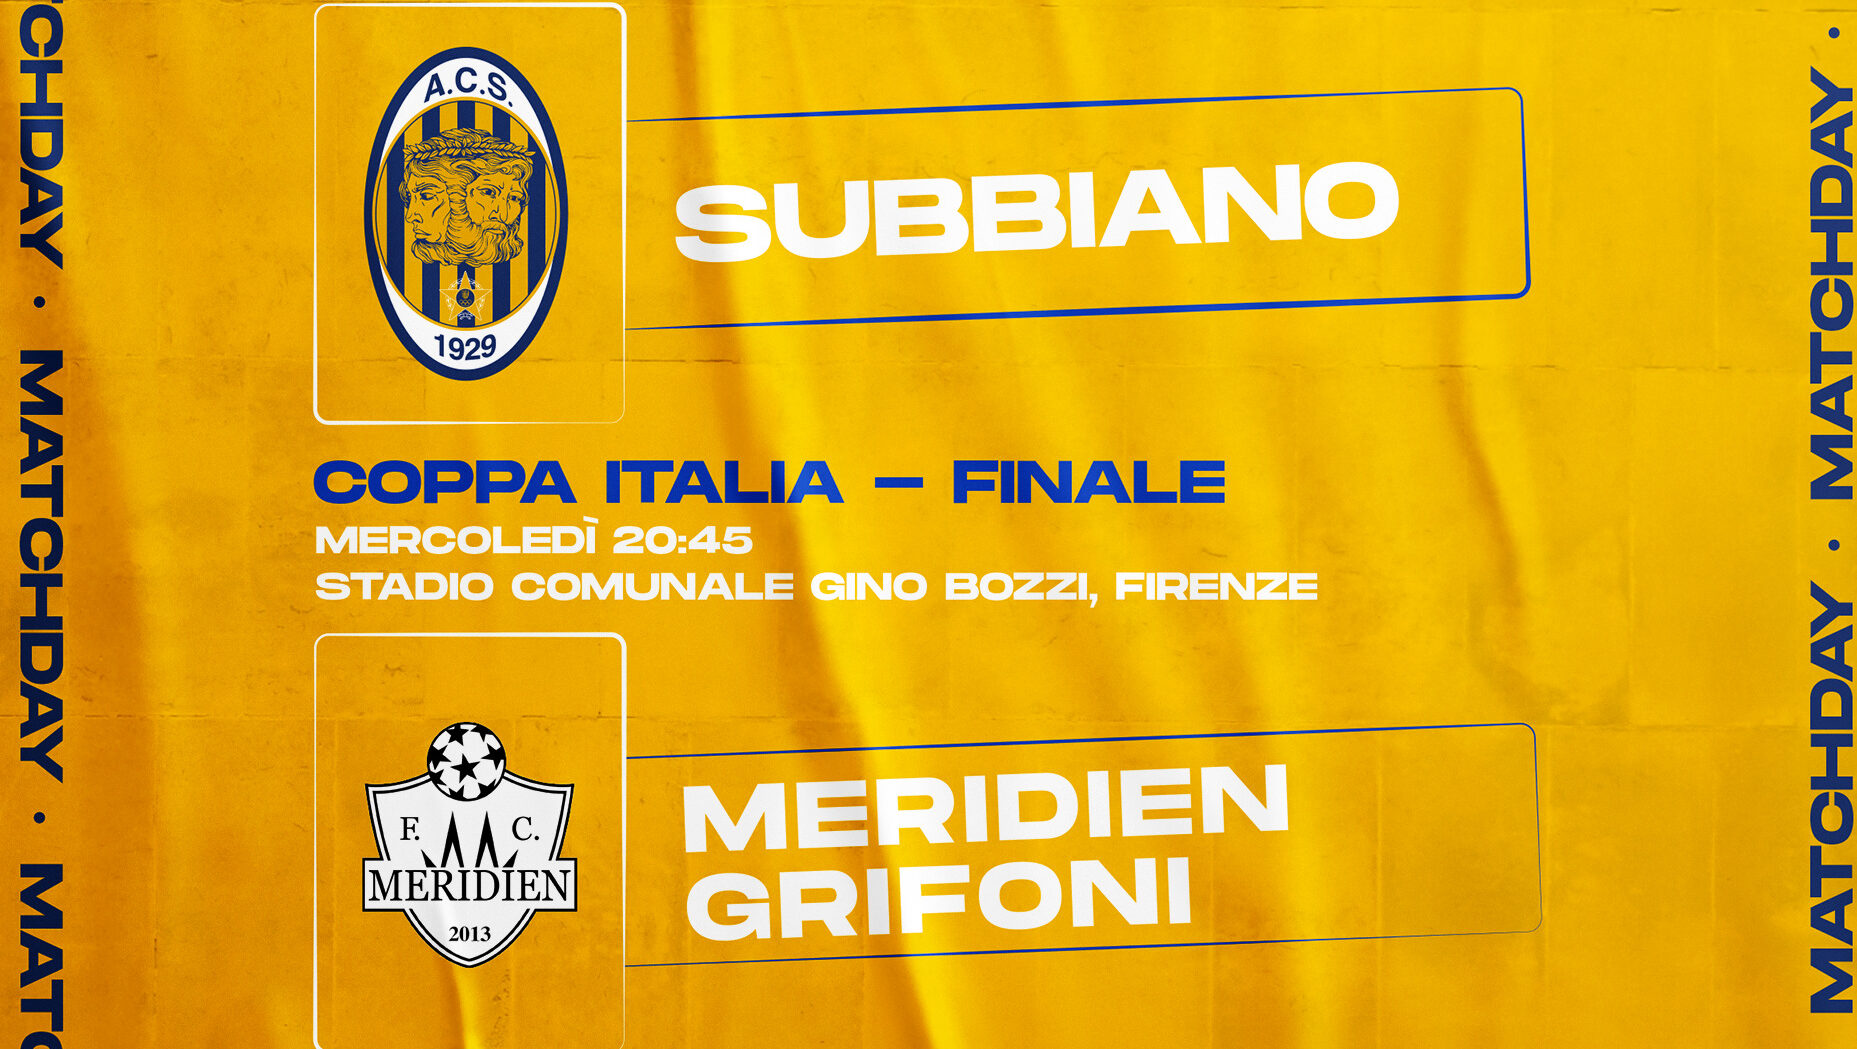 MM Subbiano vs Meridien Grifoni: domani la sfida al G. Bozzi di Firenze